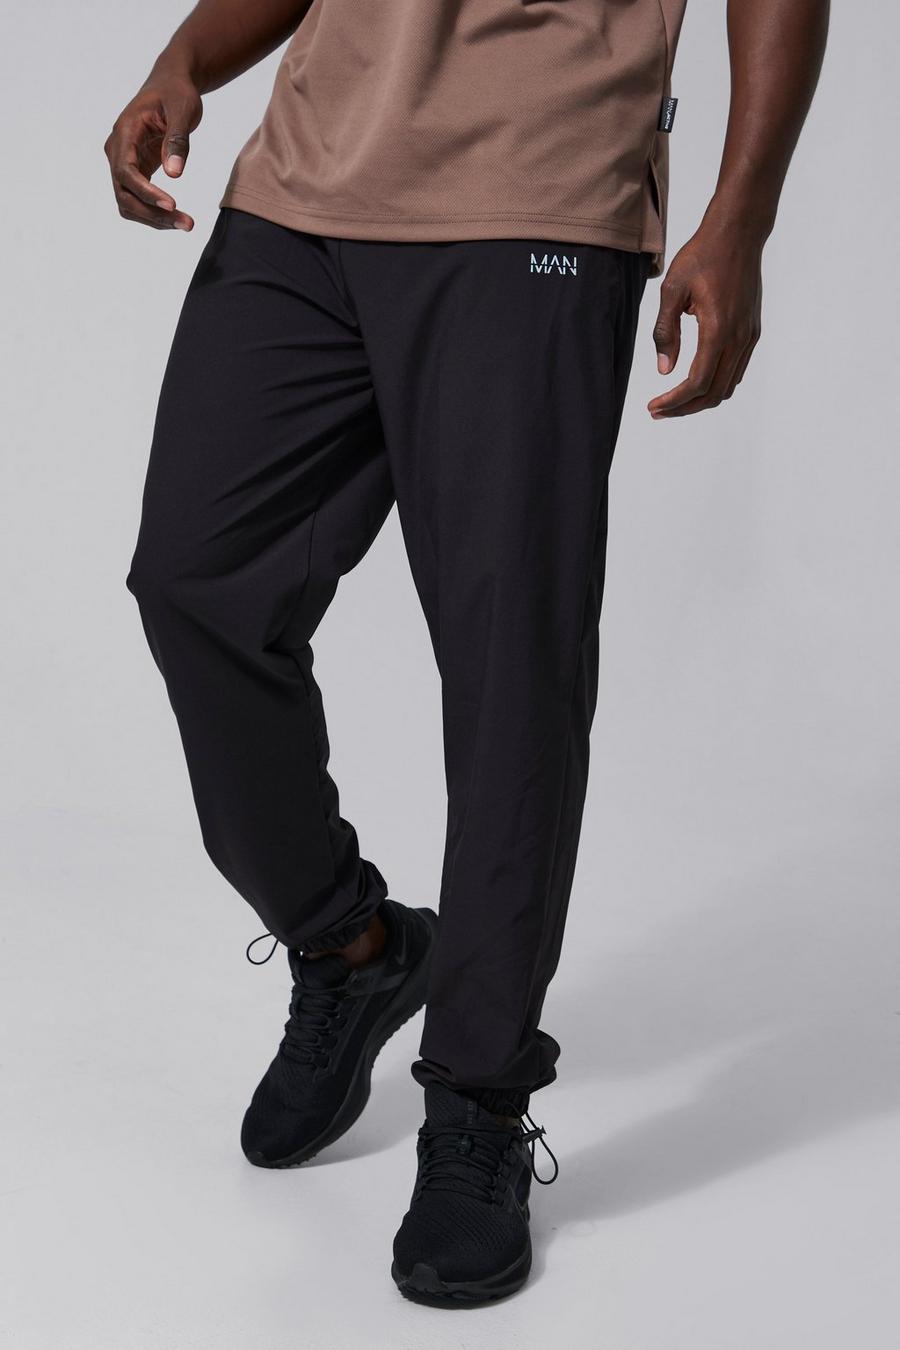 שחור nero מכנסי טרנינג ספורטיביים עם שרוך בנג'י במכפלת וכיתוב Man, לגברים גבוהים